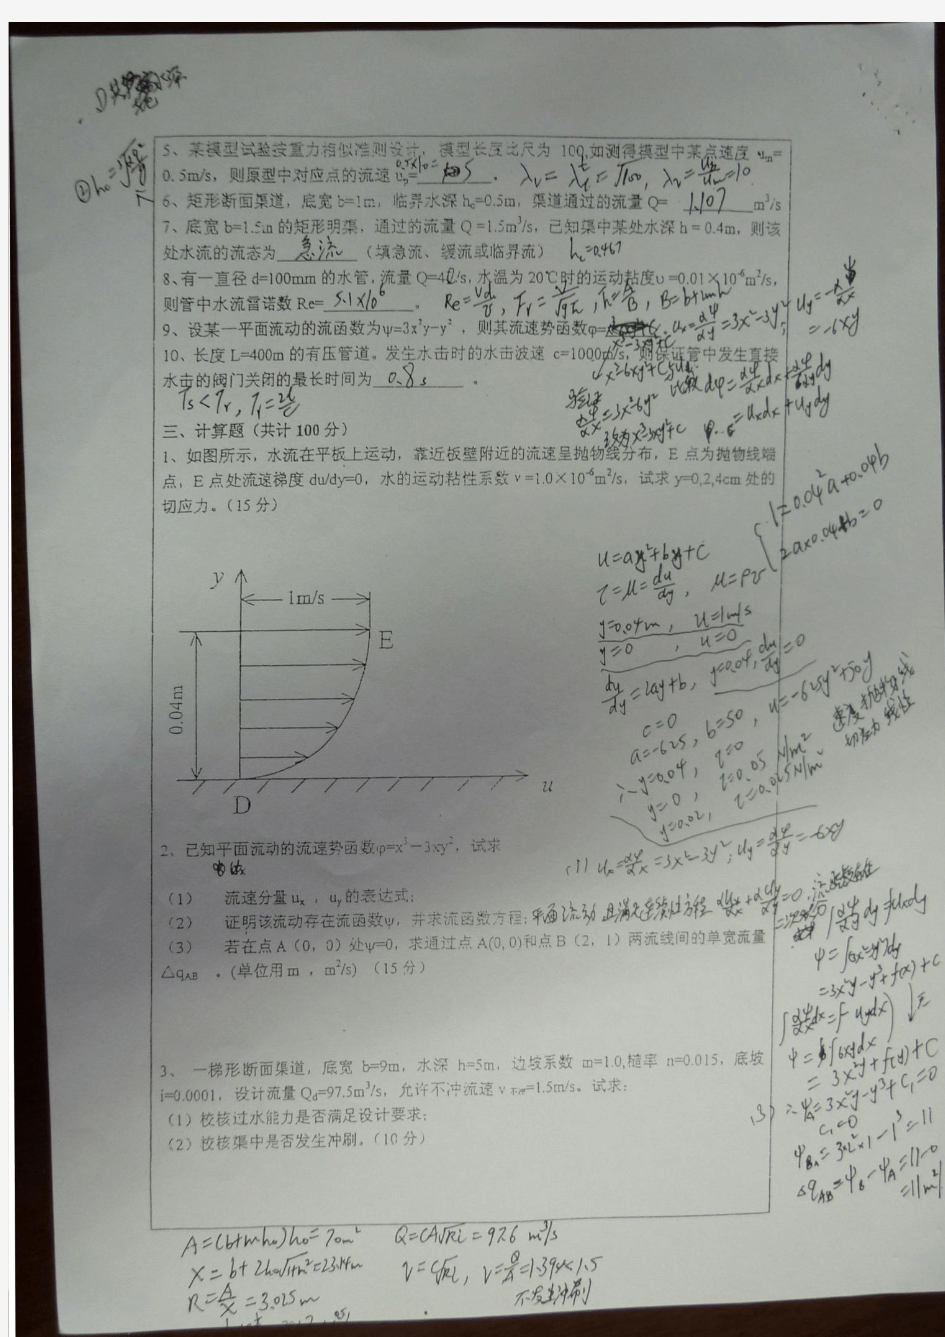 河海大学硕士研究生入学考试水力学试题样卷(2)